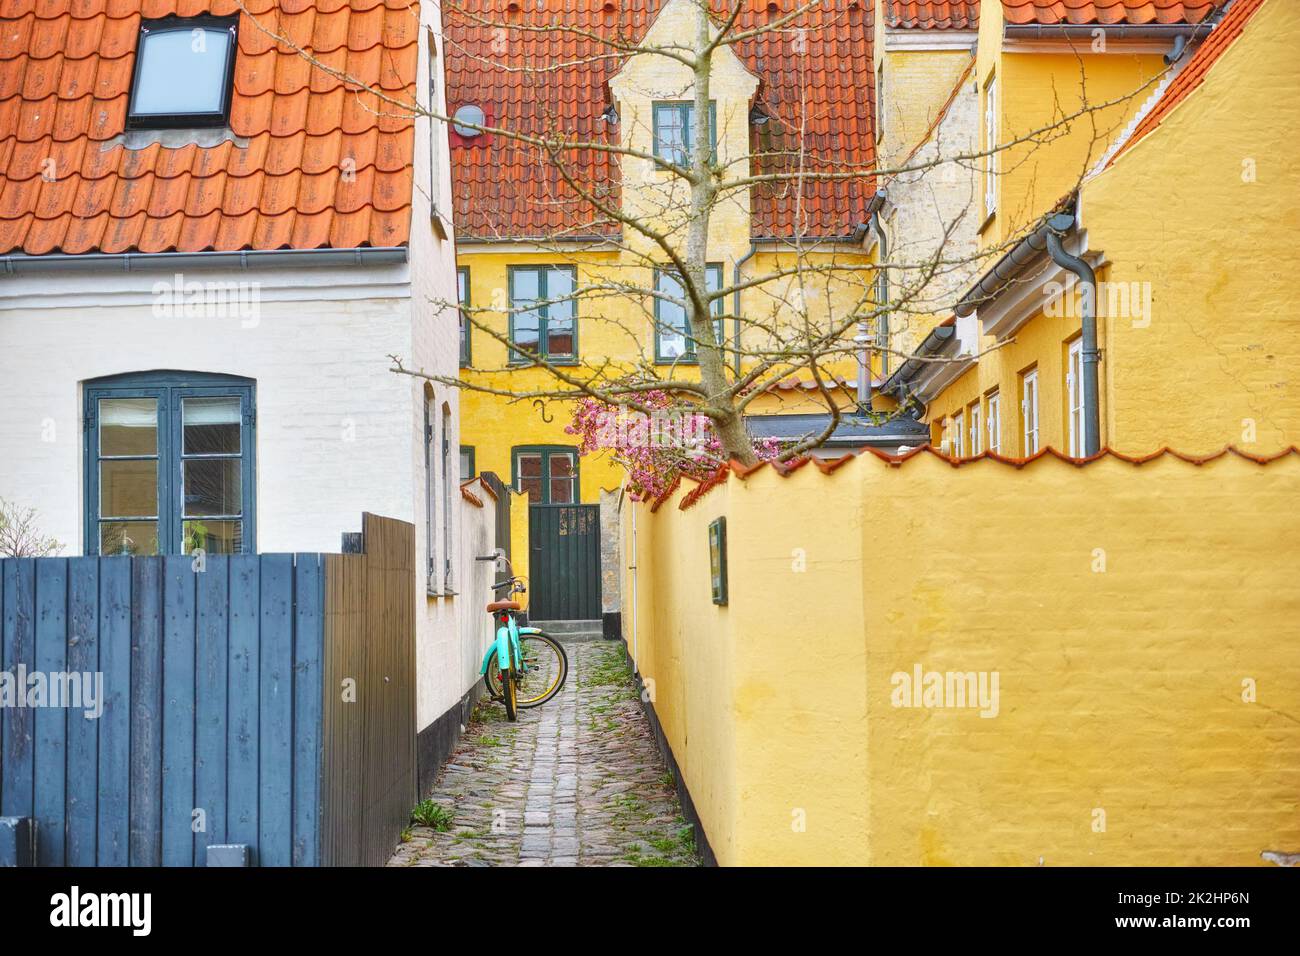 Historische Architektur von Dragor. Olld Häuser in der historischen Stadt Dragoer, Kopenhagen, Dänemark. Stockfoto